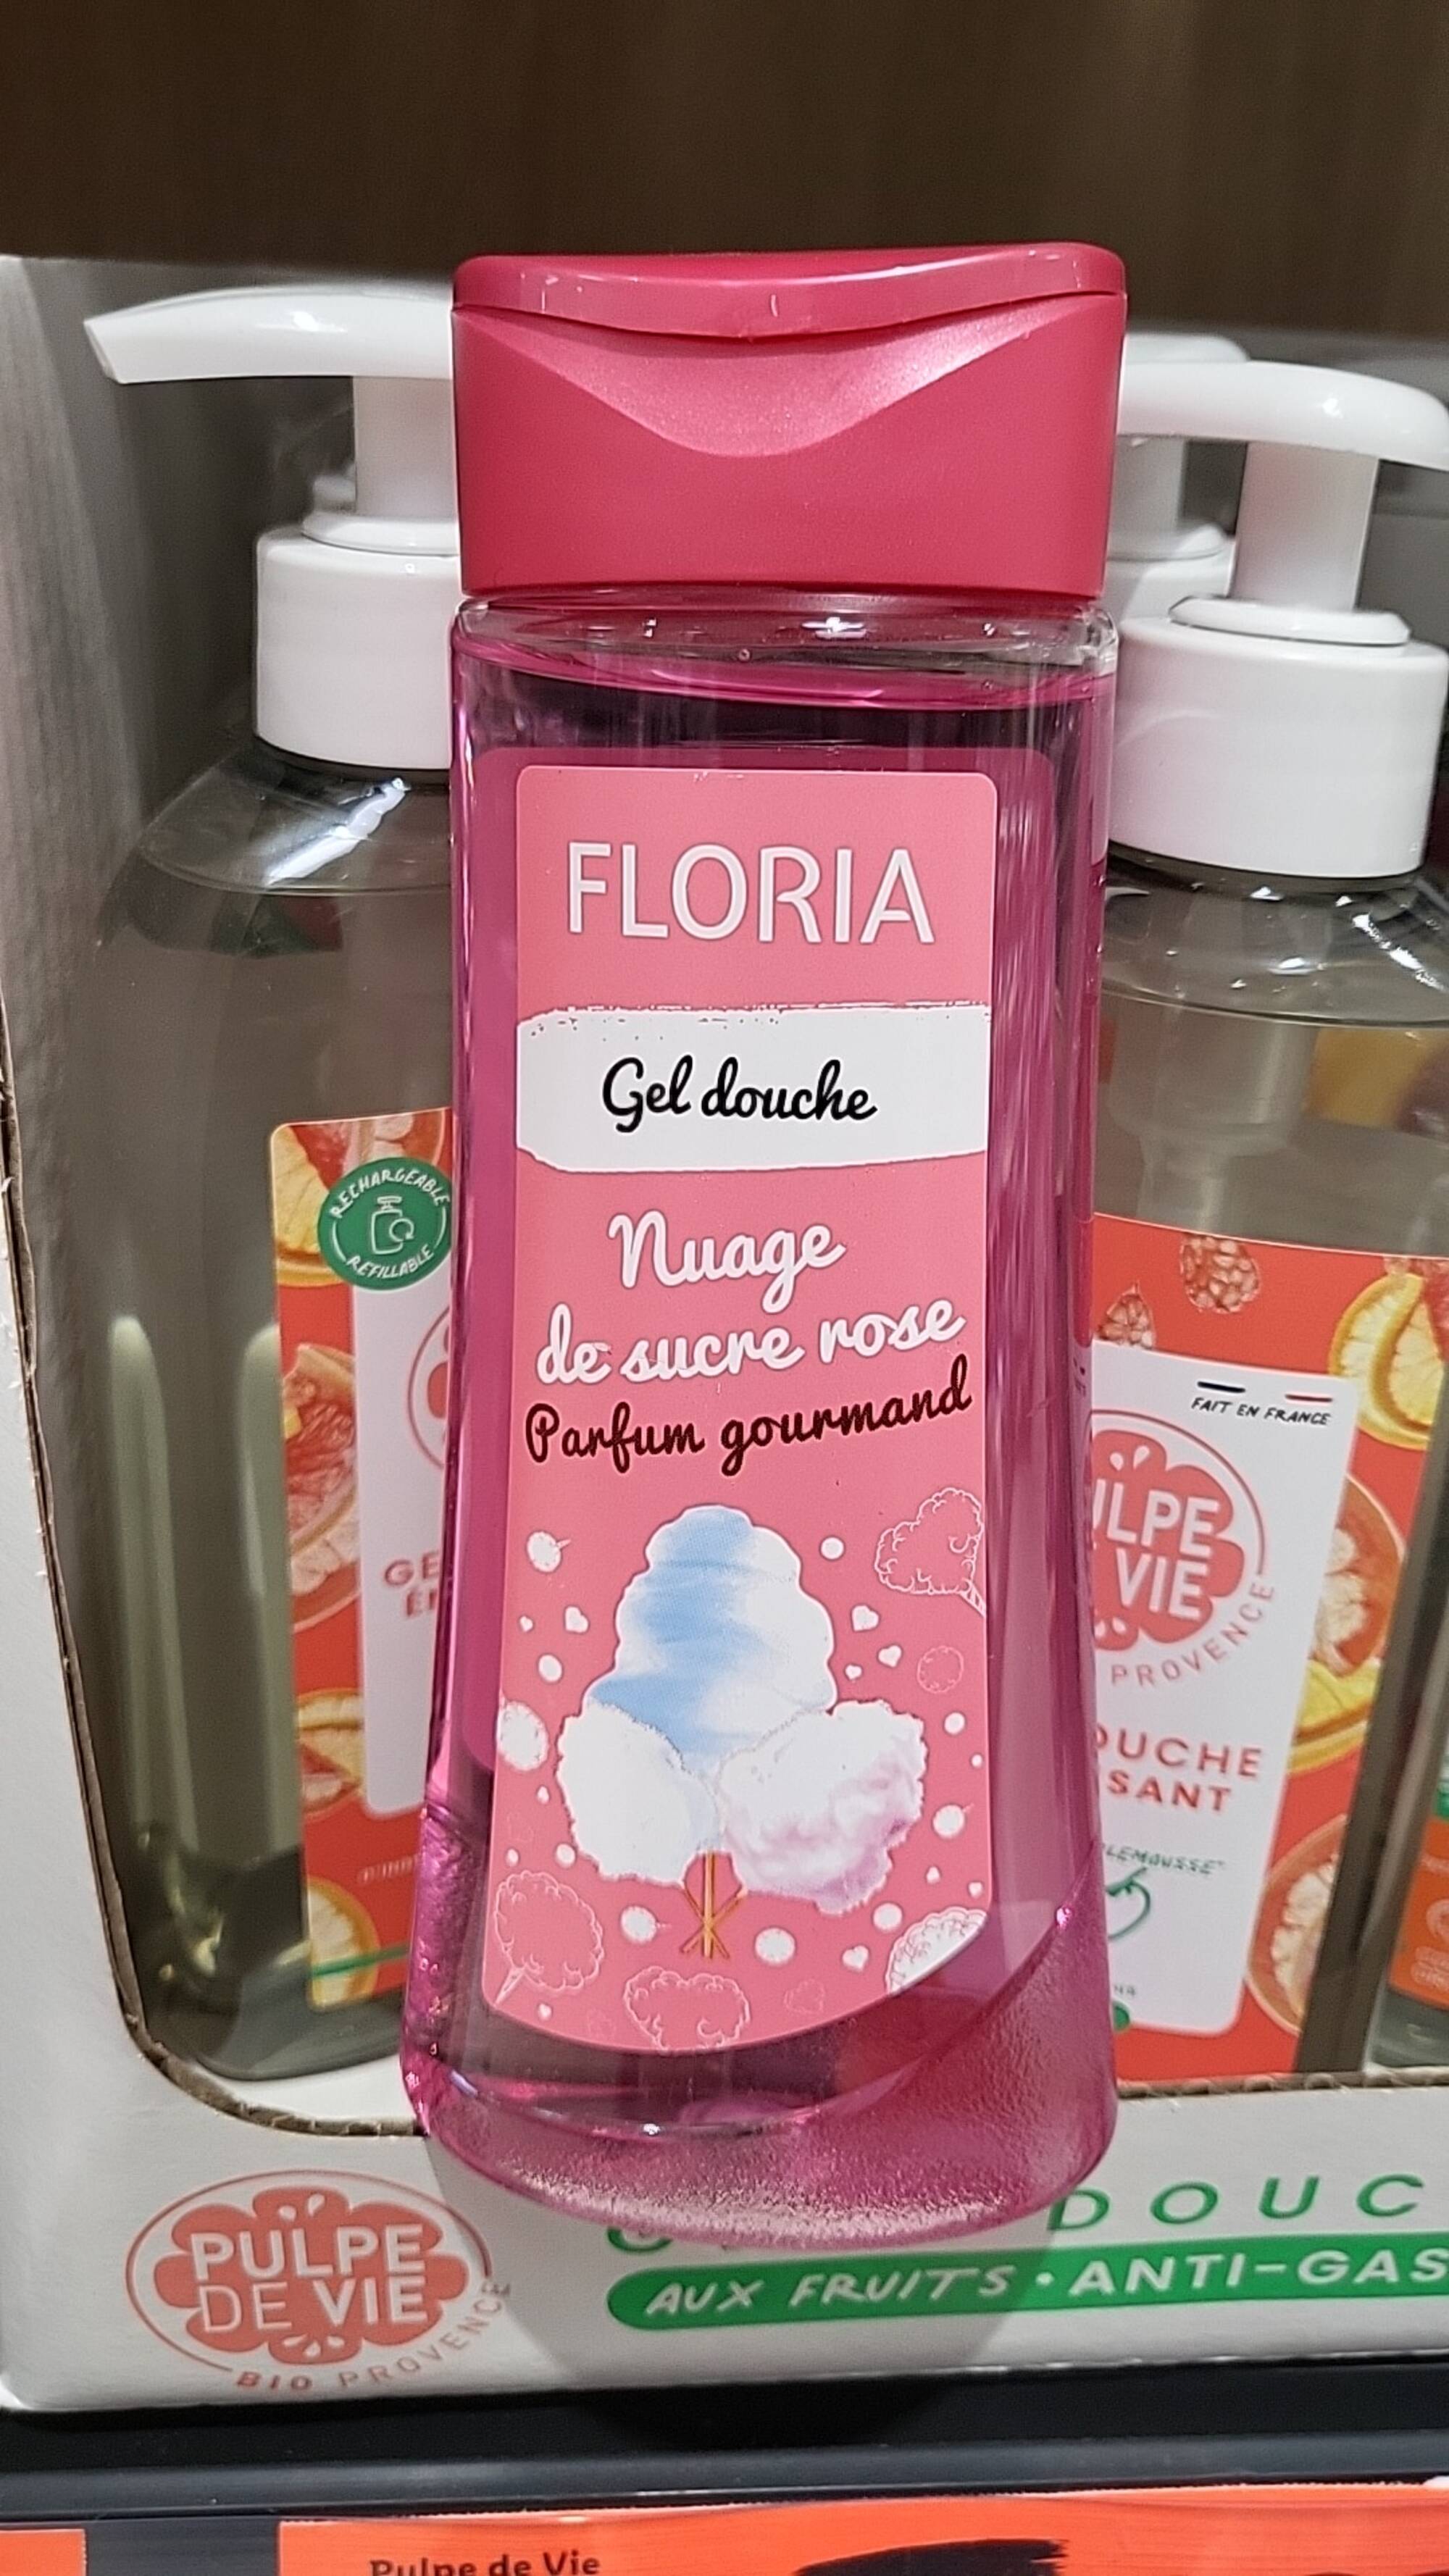 FLORIA - Gel douche Nuage de sucre rose